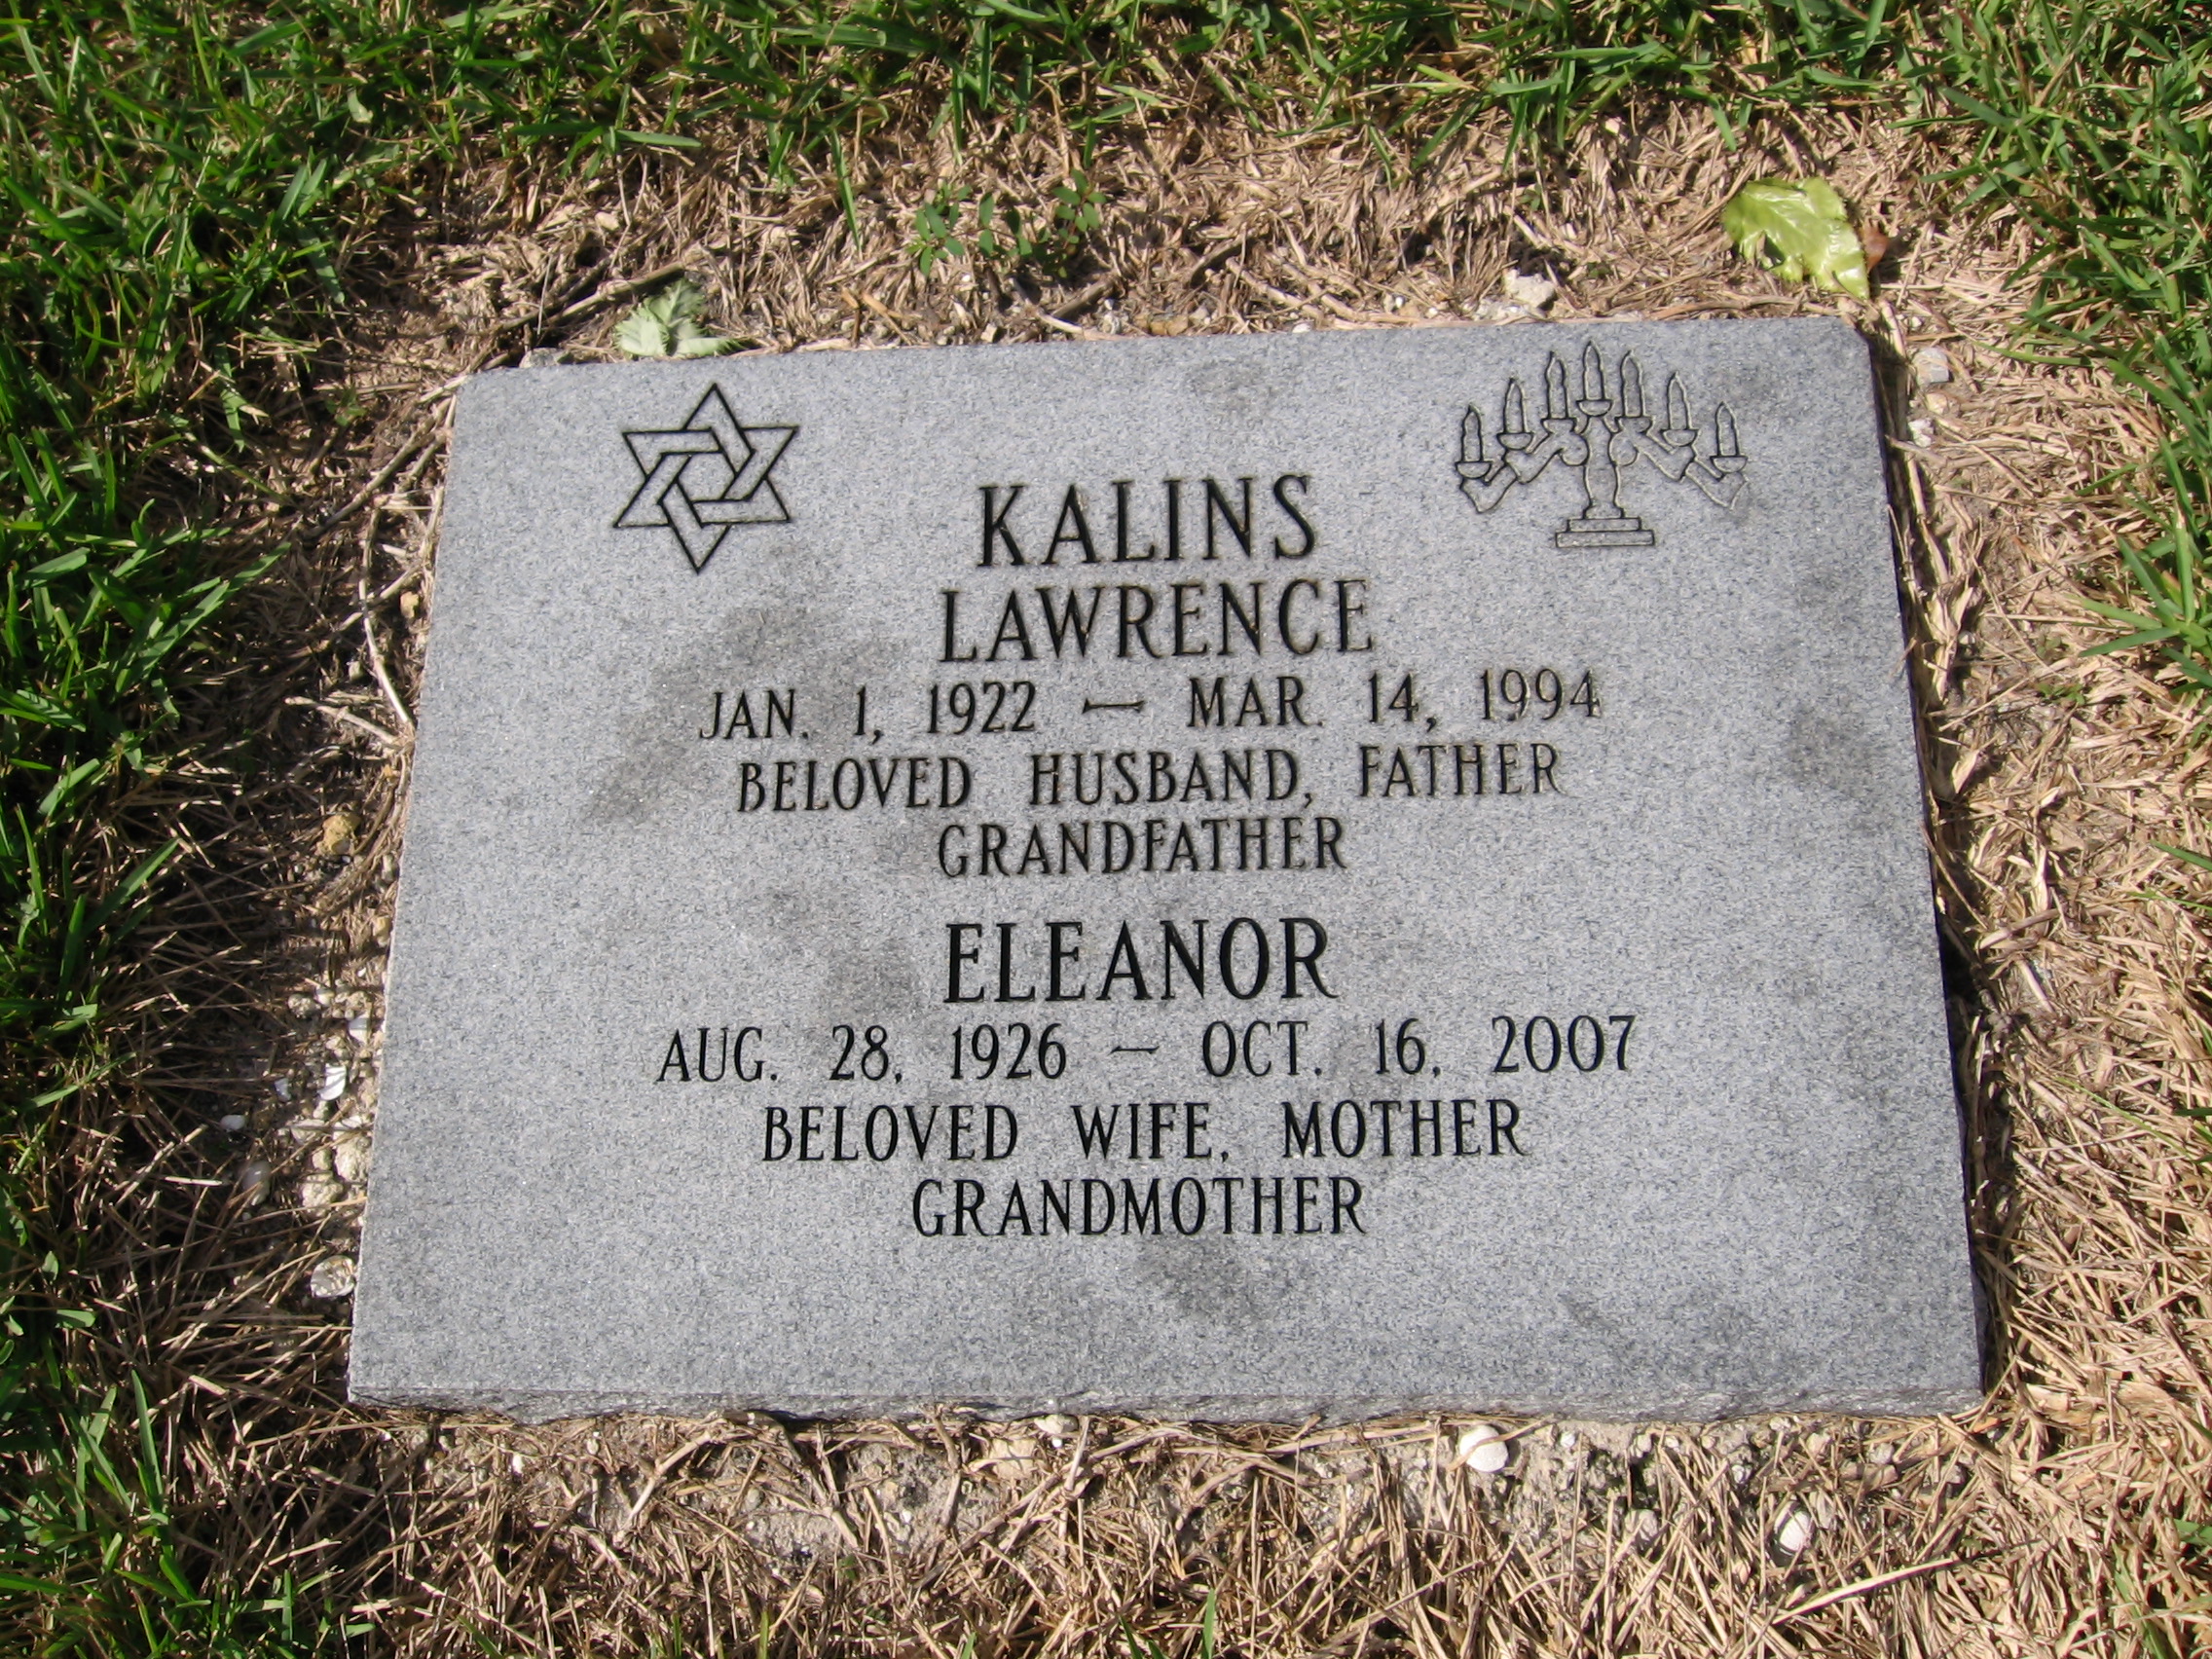 Lawrence Kalins